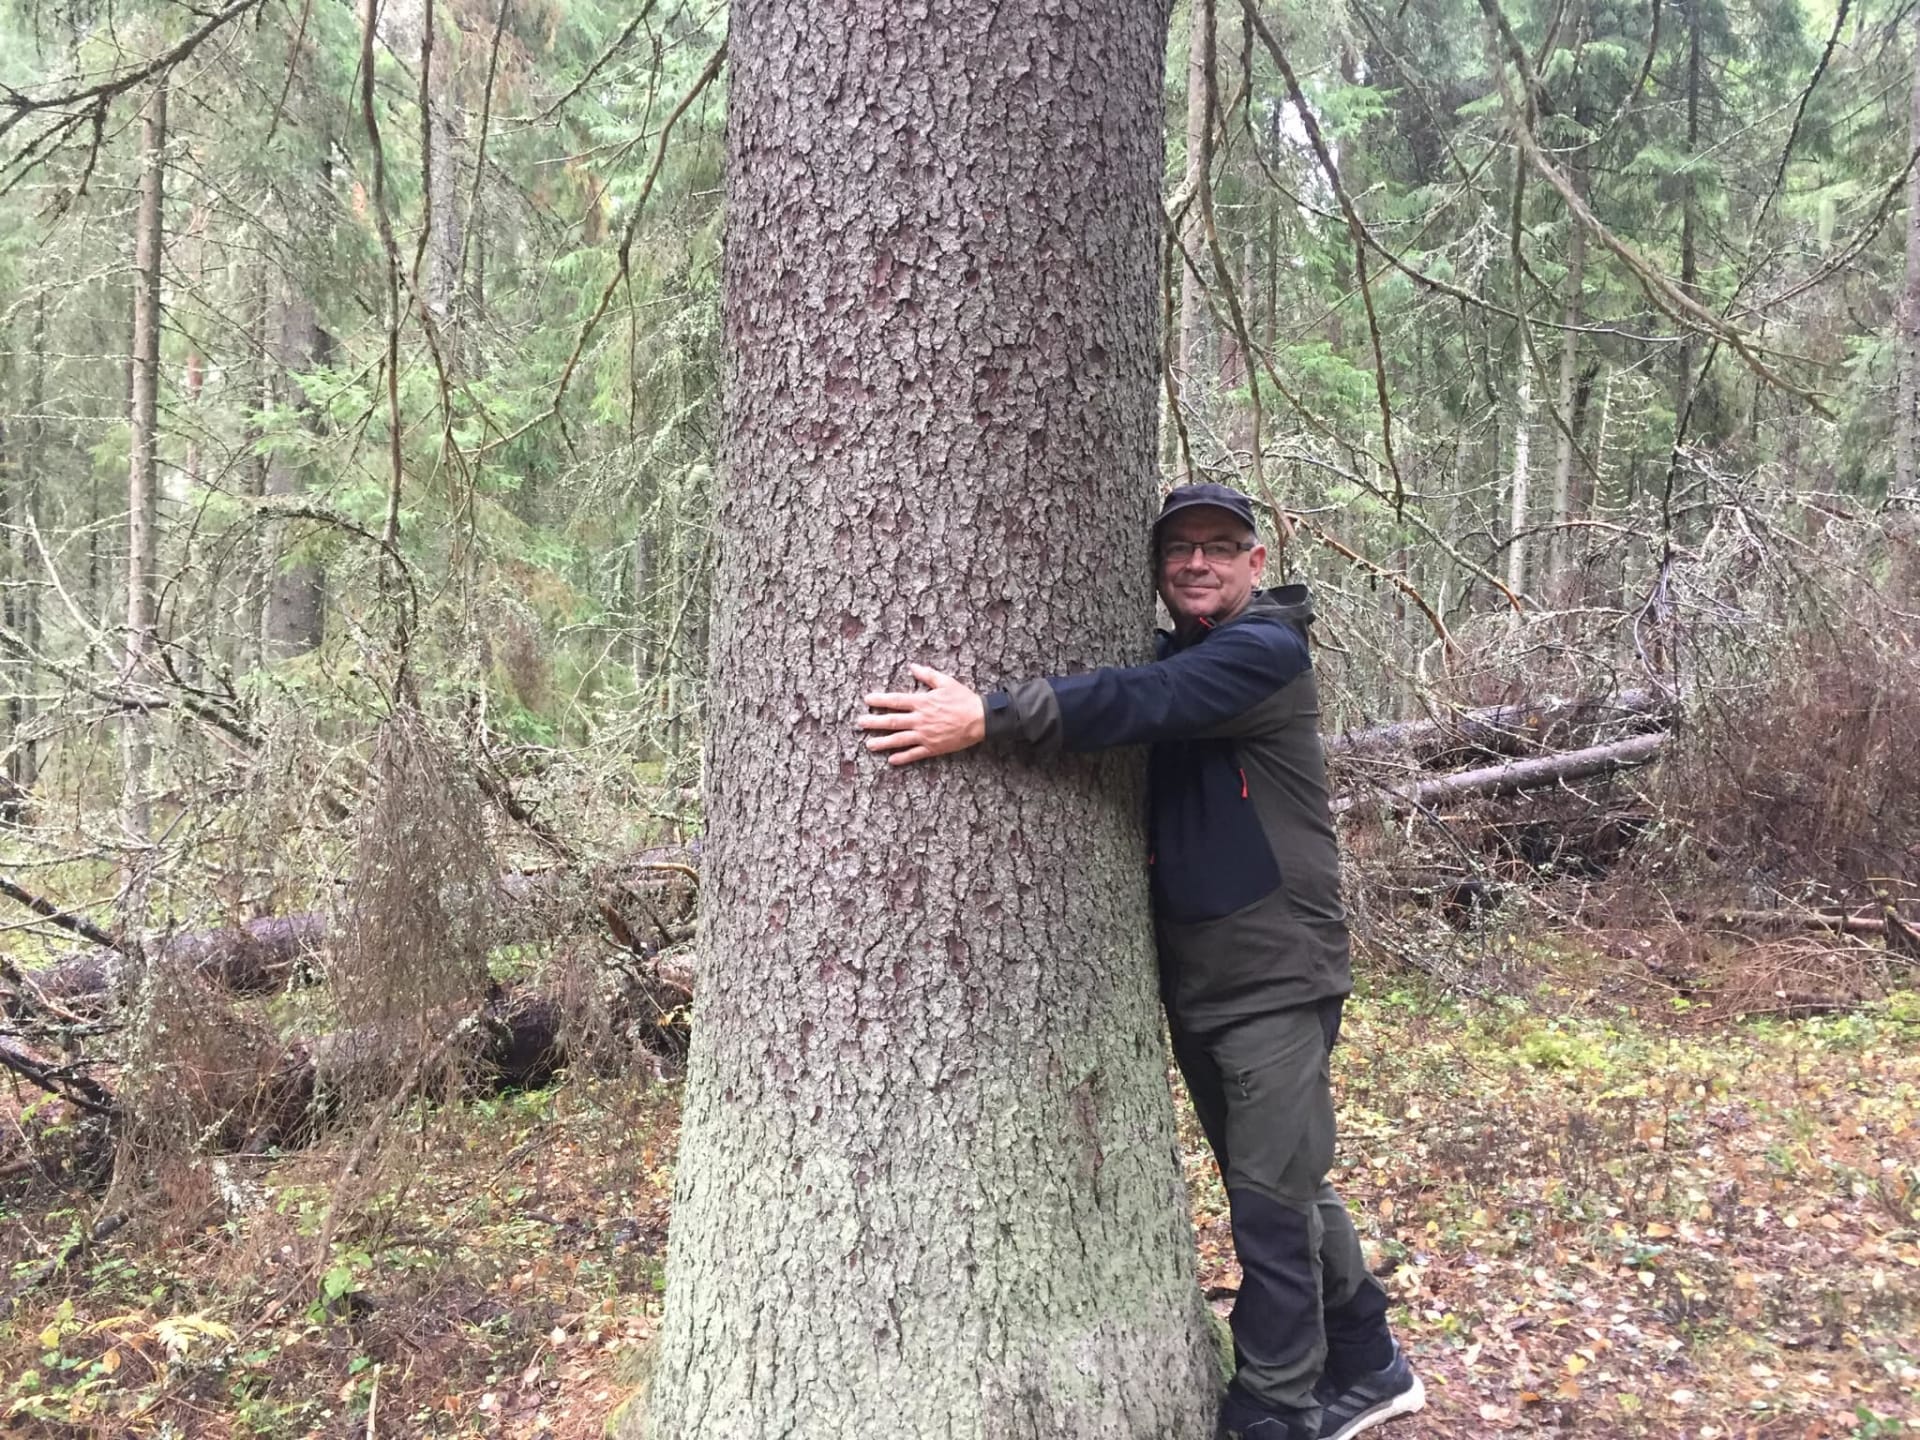 Hug the tree!